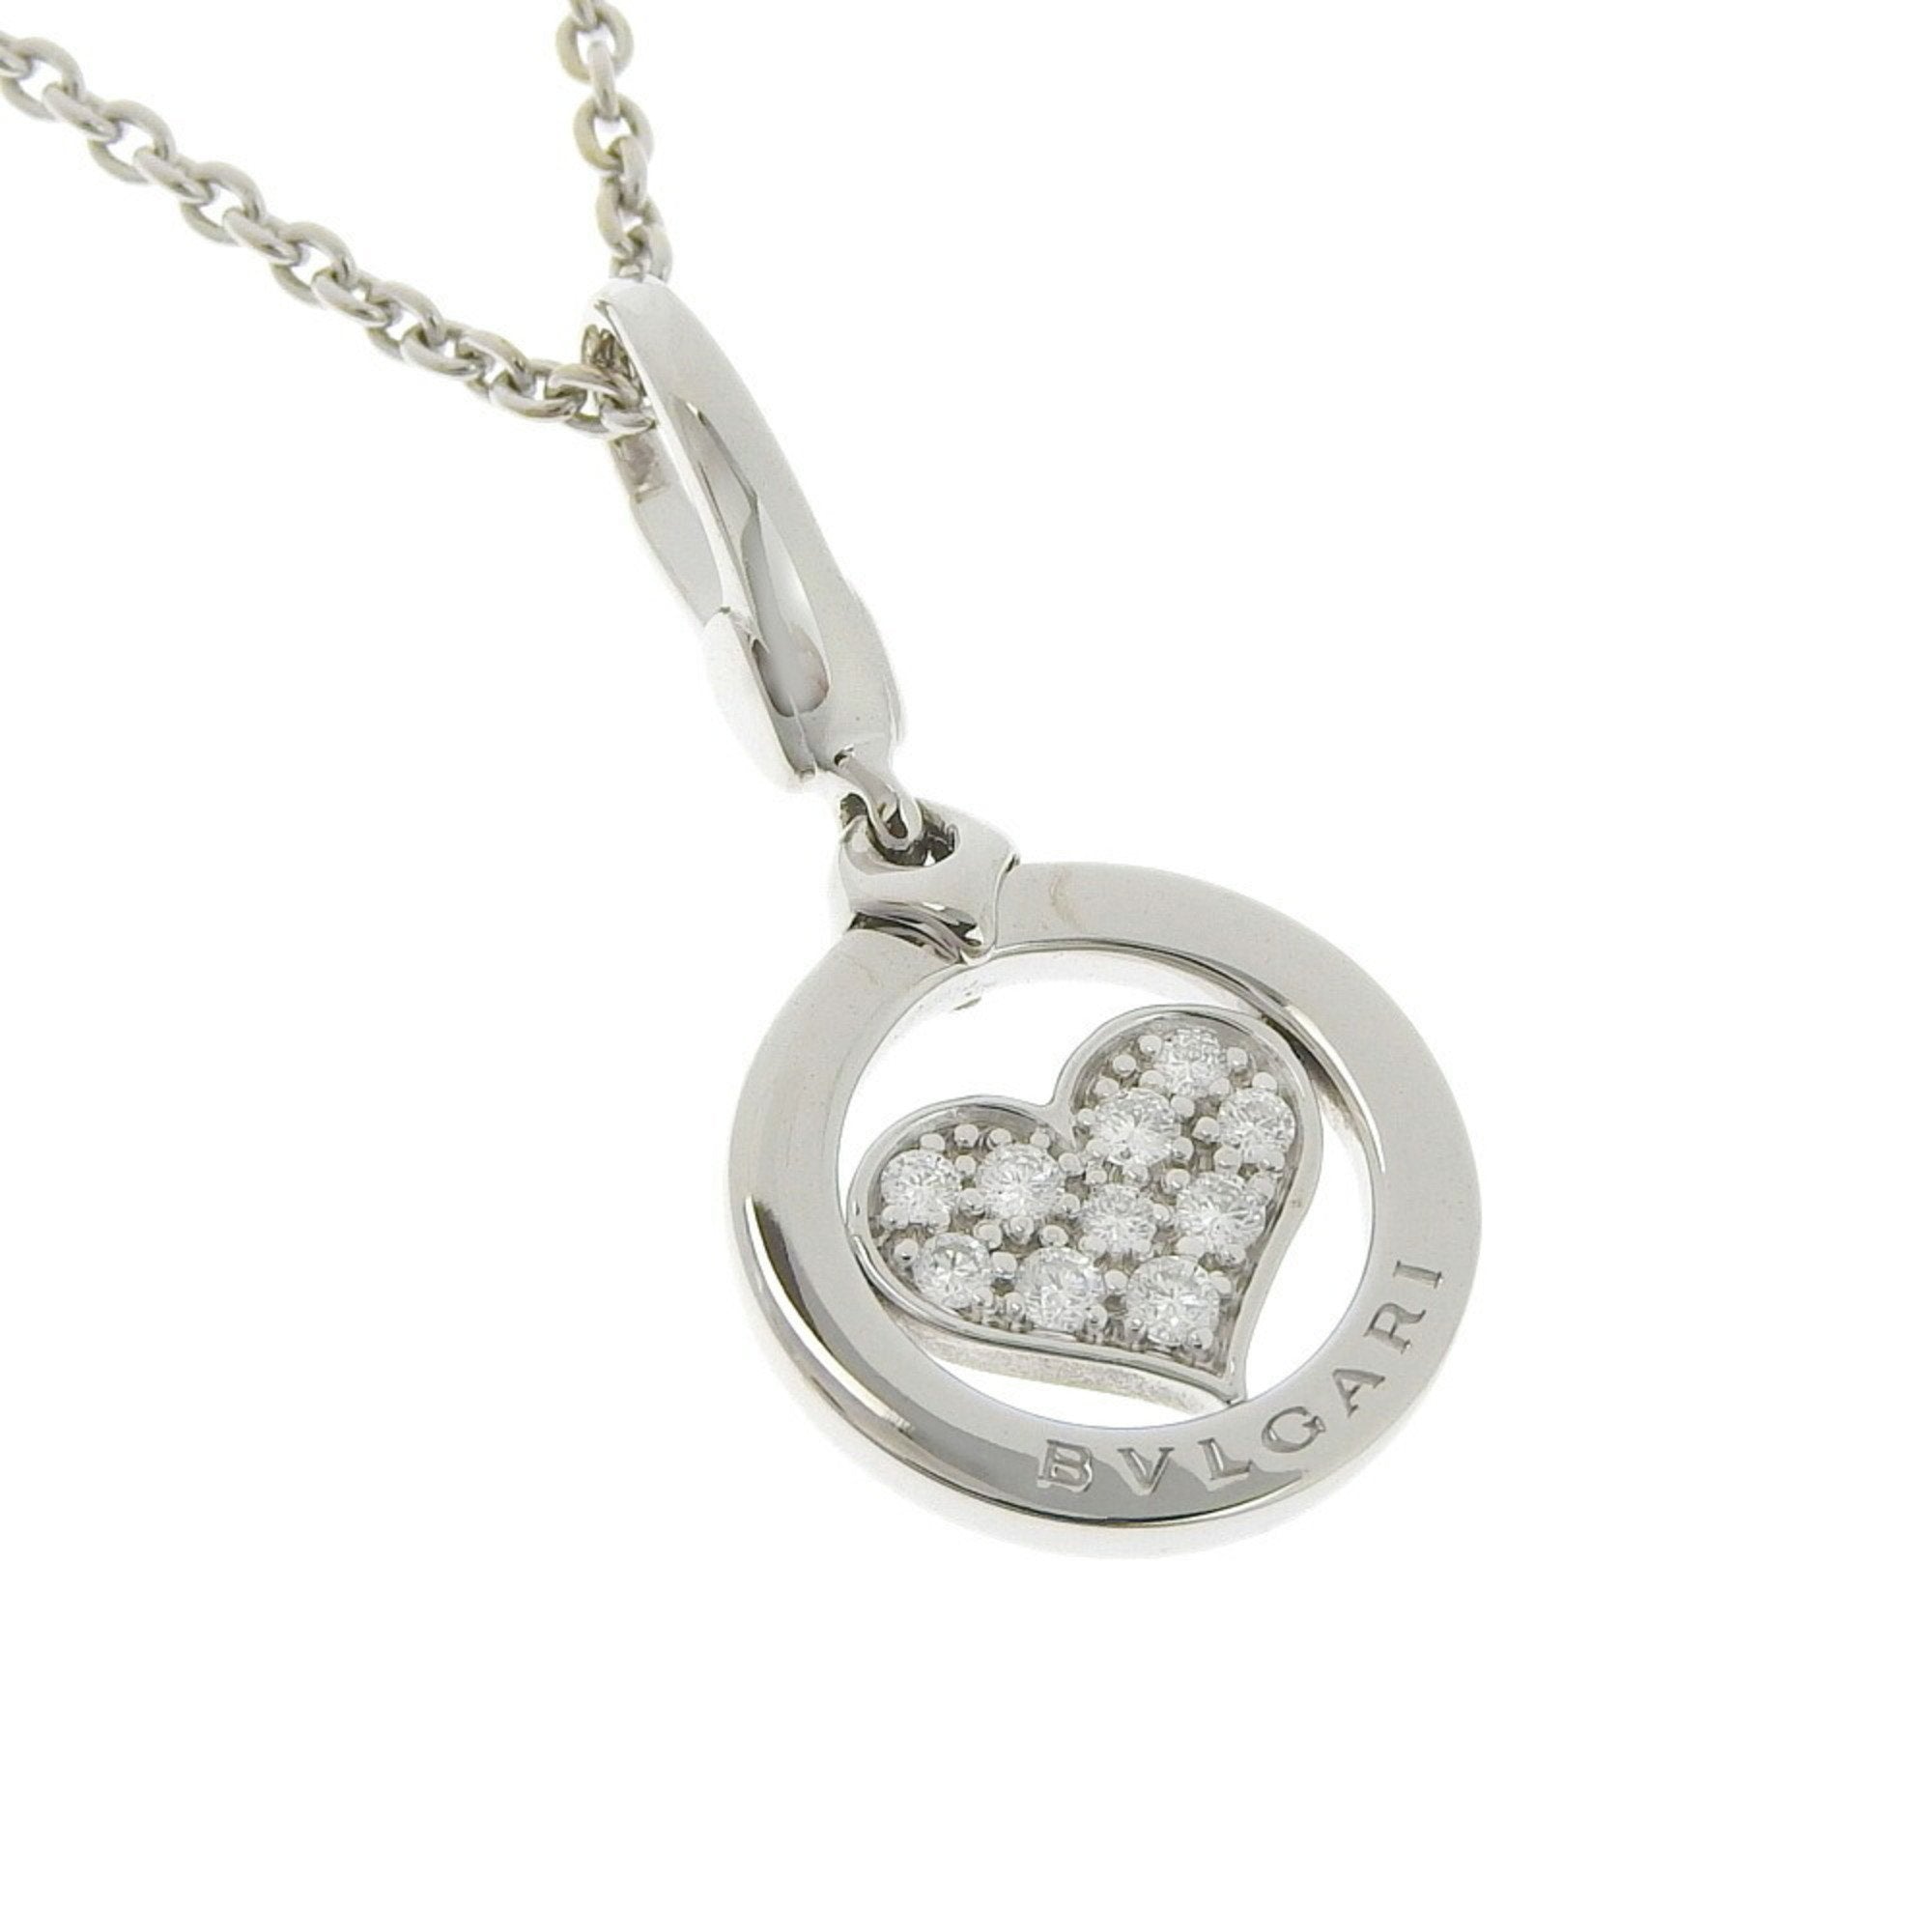 Bvlgari Tondo Heart K18 White Gold x Diamond Women's Necklace